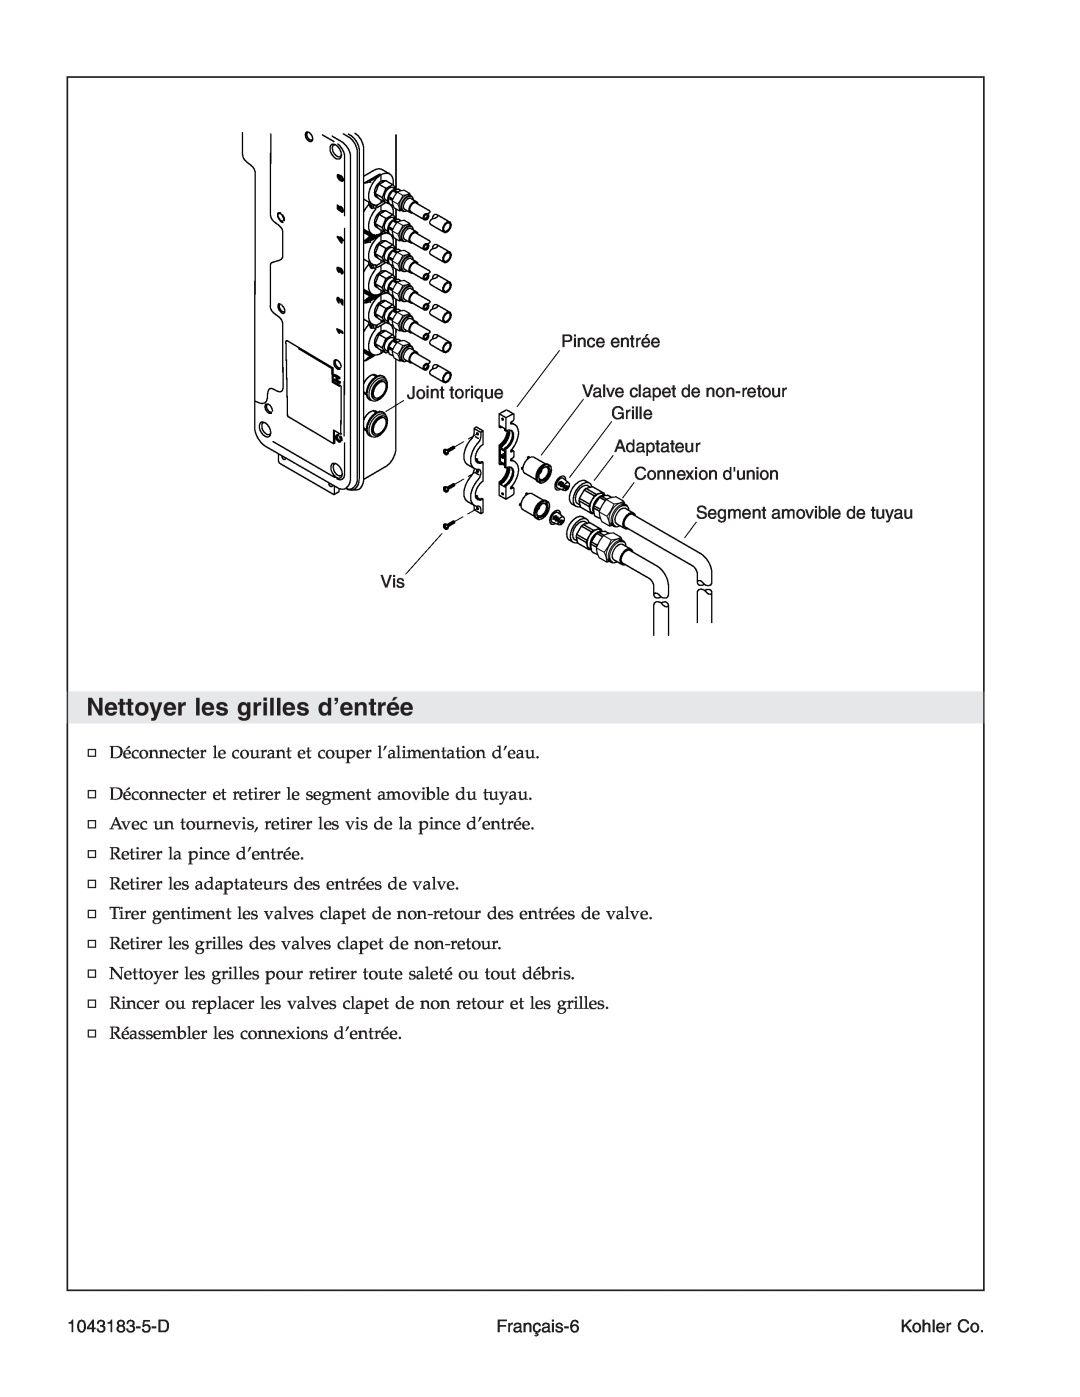 Kohler 1043183-5-D manual Nettoyer les grilles d’entrée, Joint torique Vis, Pince entrée Valve clapet de non-retour Grille 